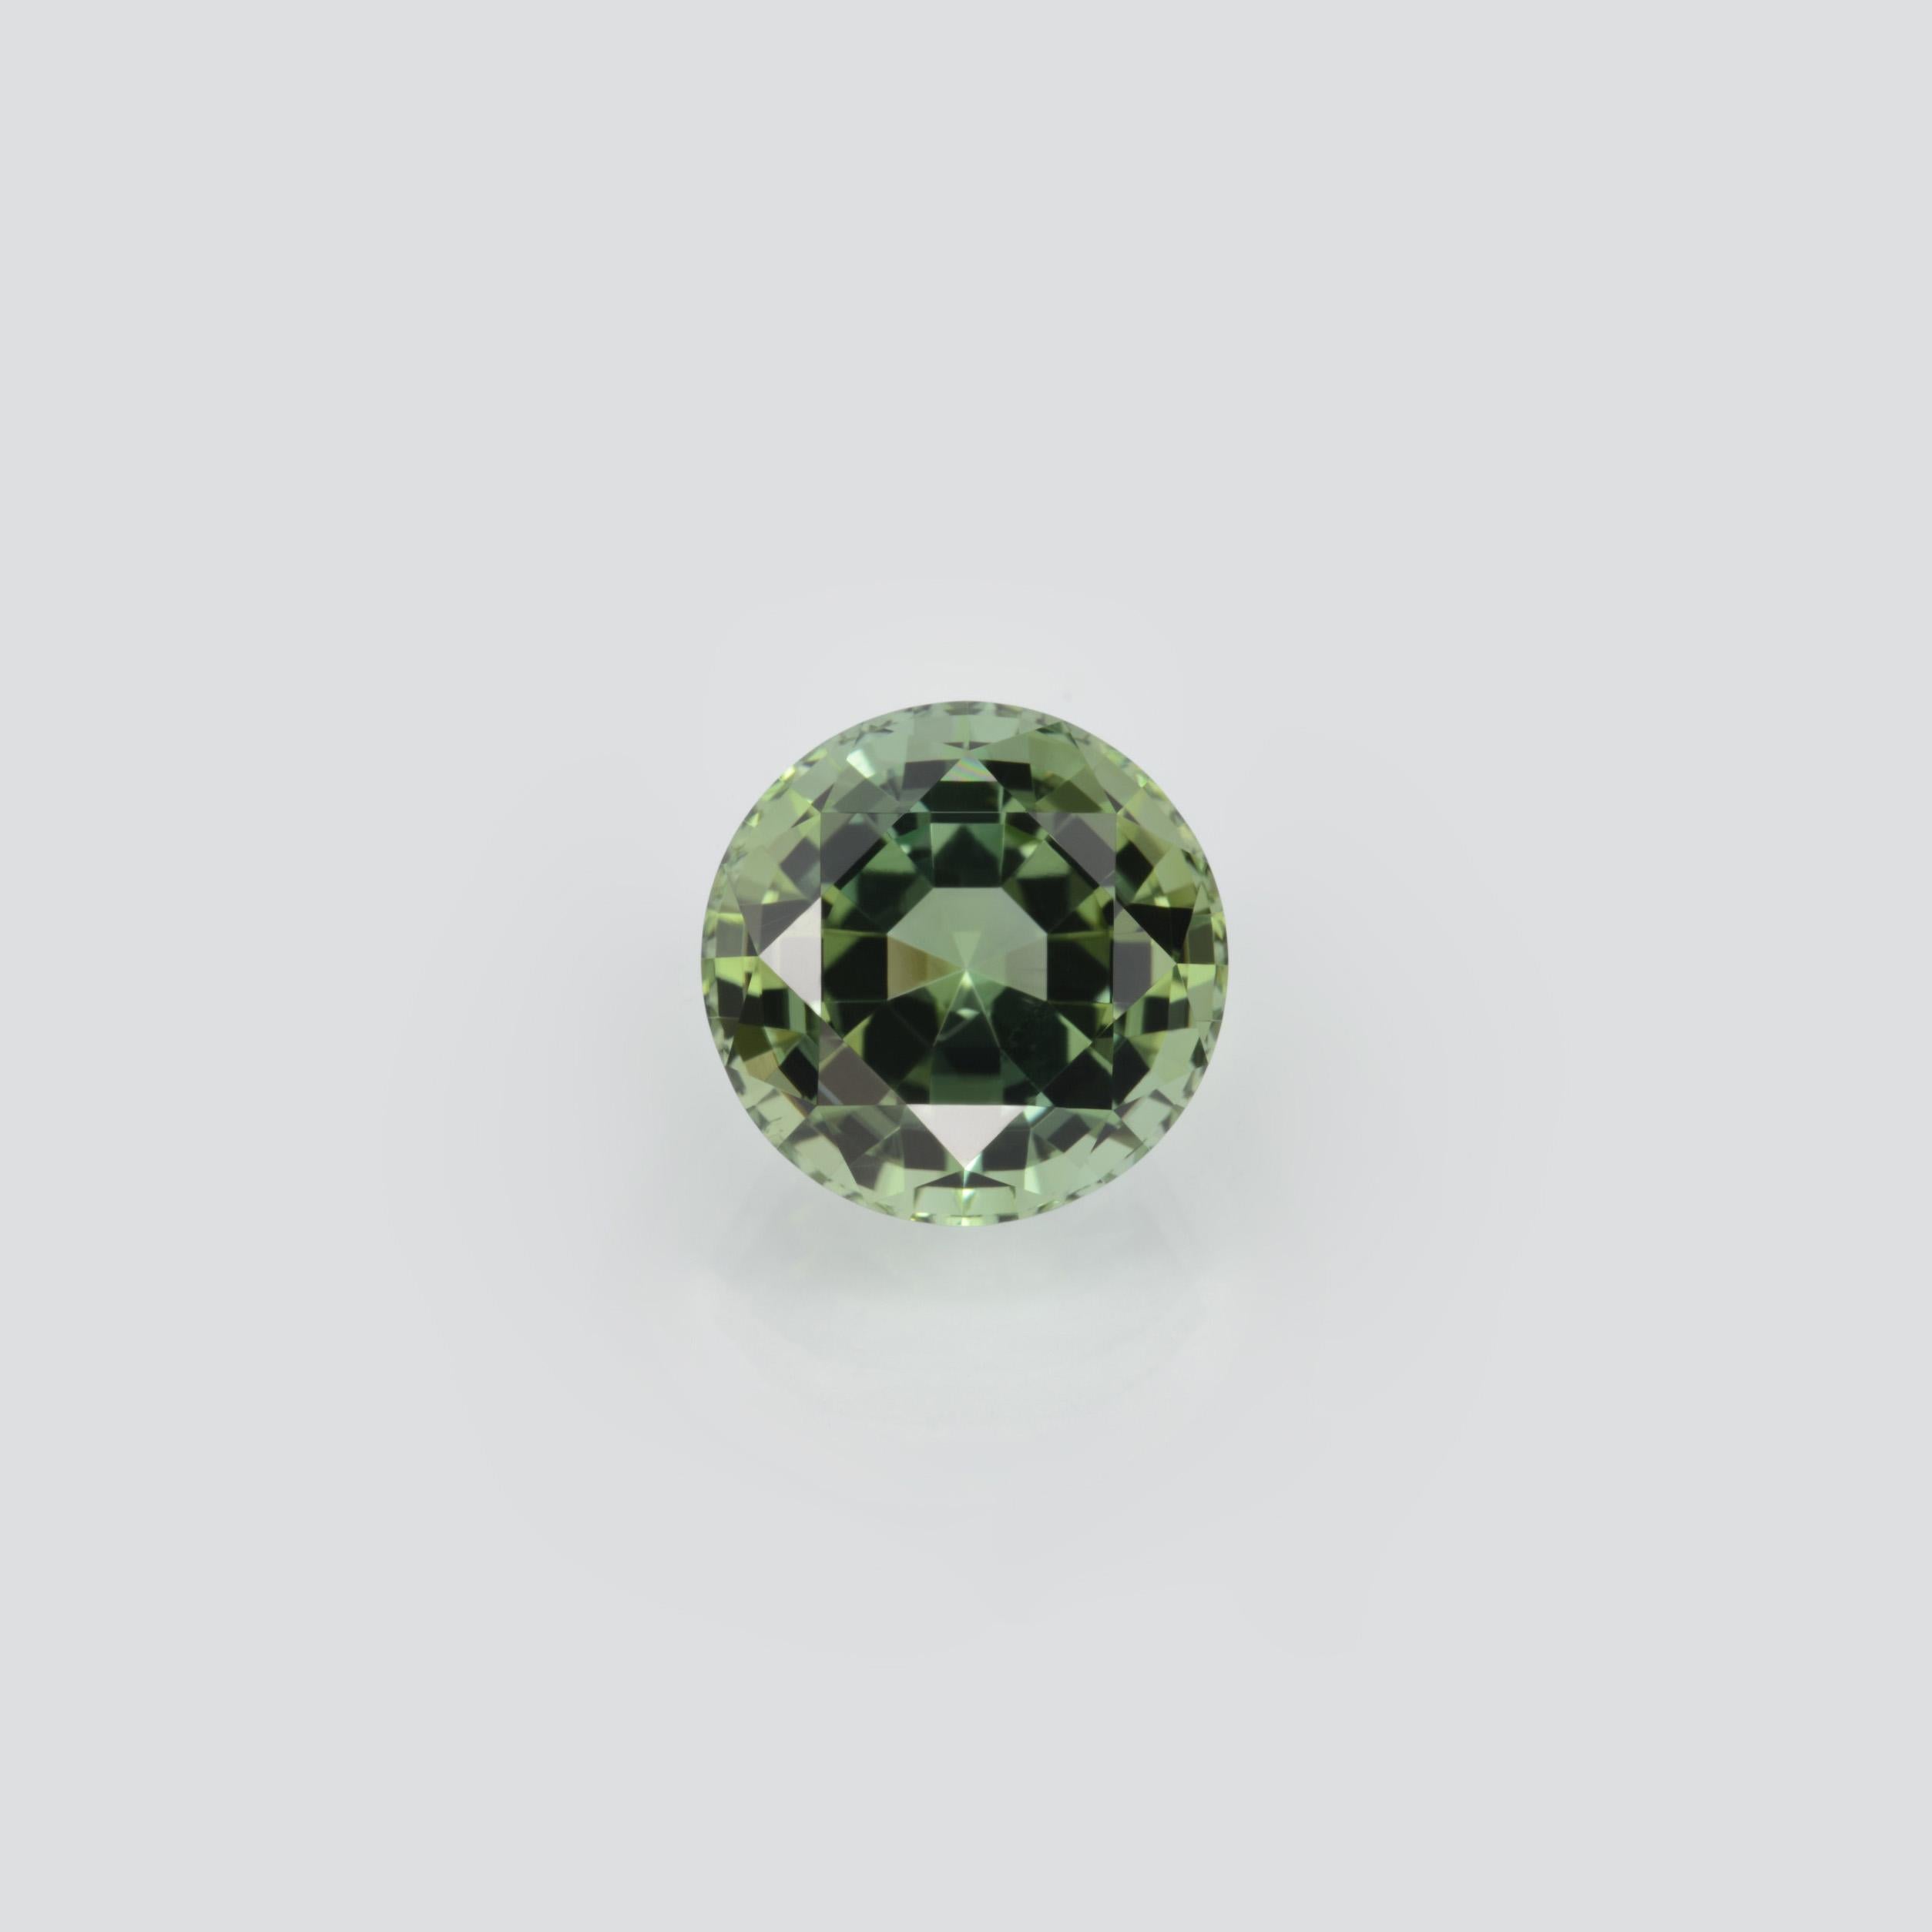 Modern Green Tourmaline Ring Gem 9.78 Carat Round Loose Gemstone